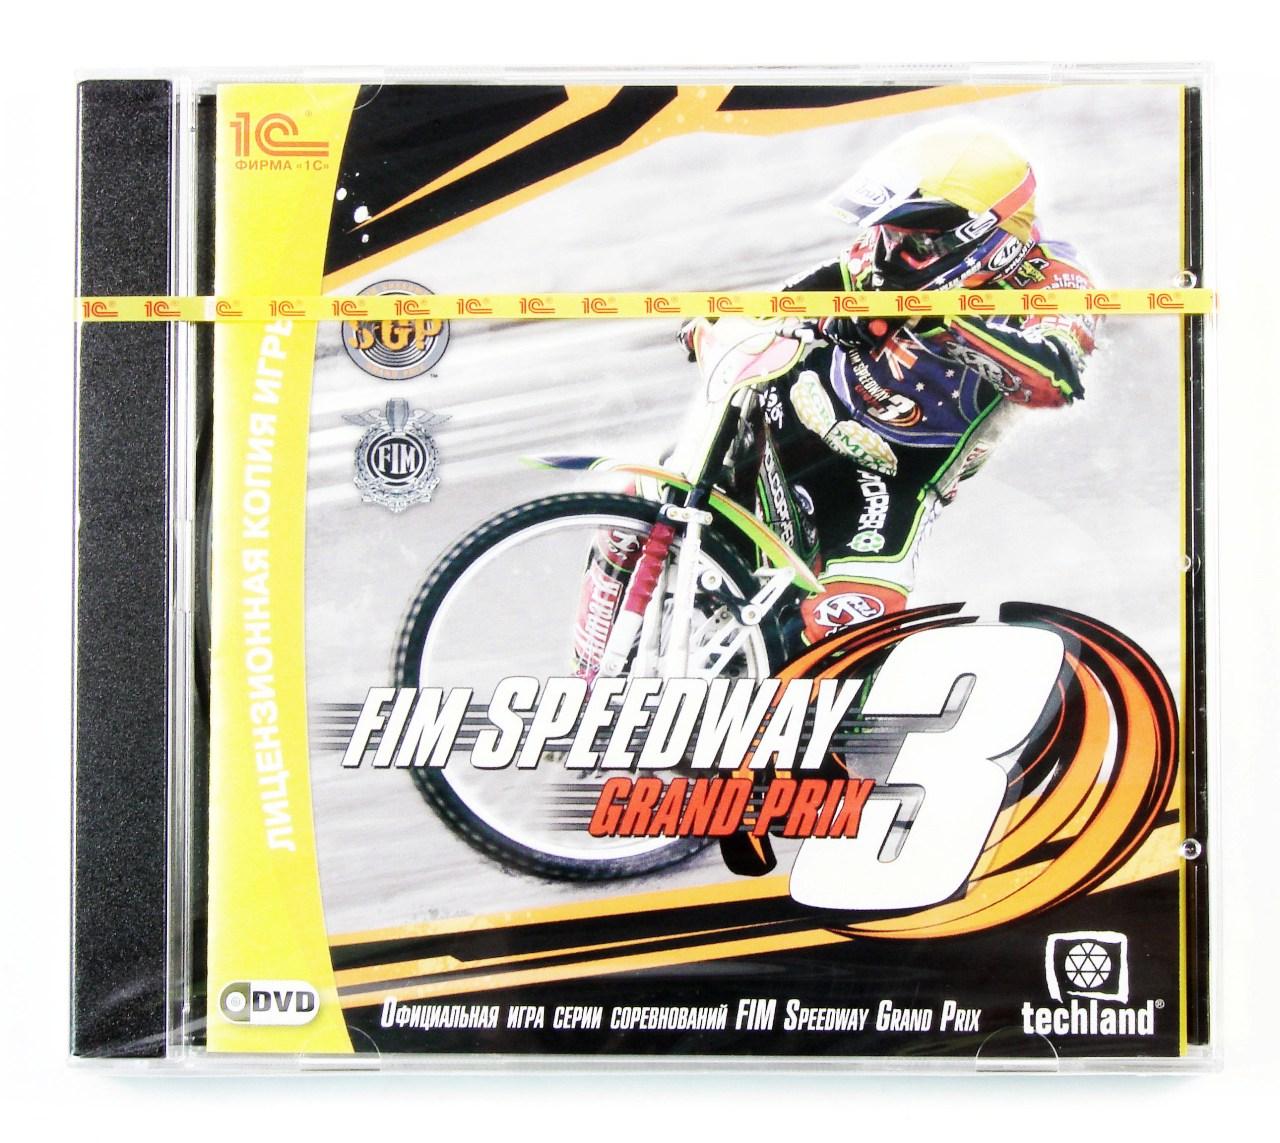 Компьютерный компакт-диск FIM Speedway Grand Prix 3 (PC), фирма "1C", DVD